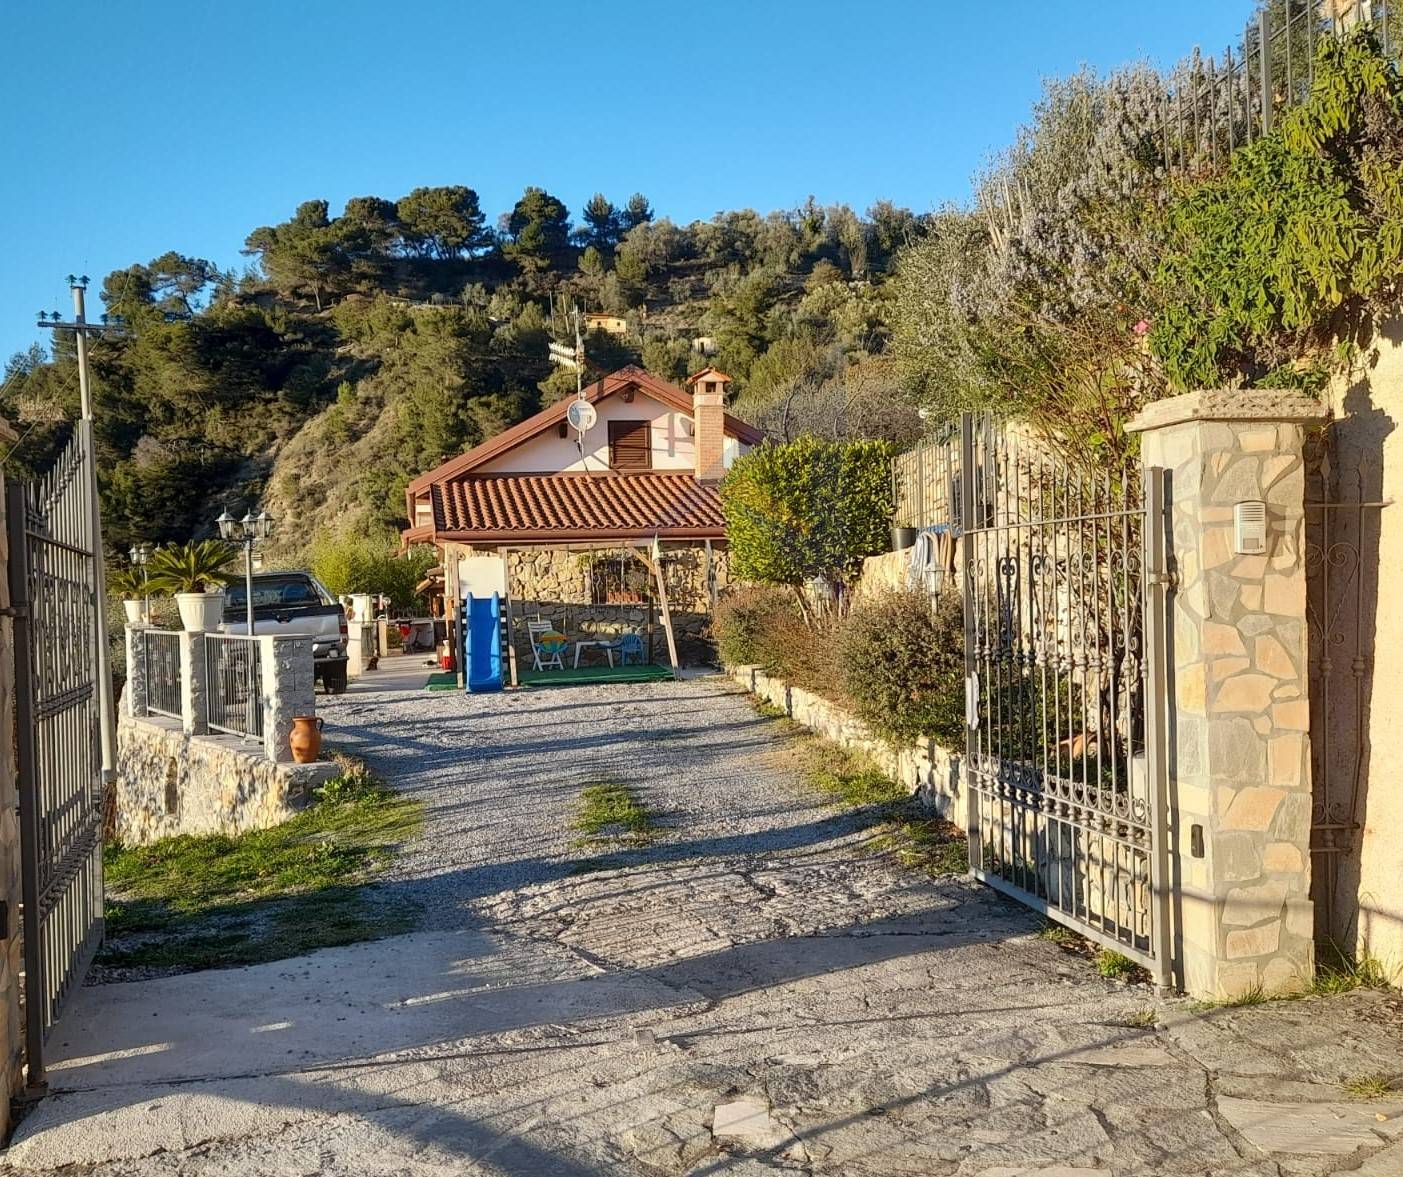 Villa in vendita a Soldano, 5 locali, prezzo € 298.000 | PortaleAgenzieImmobiliari.it